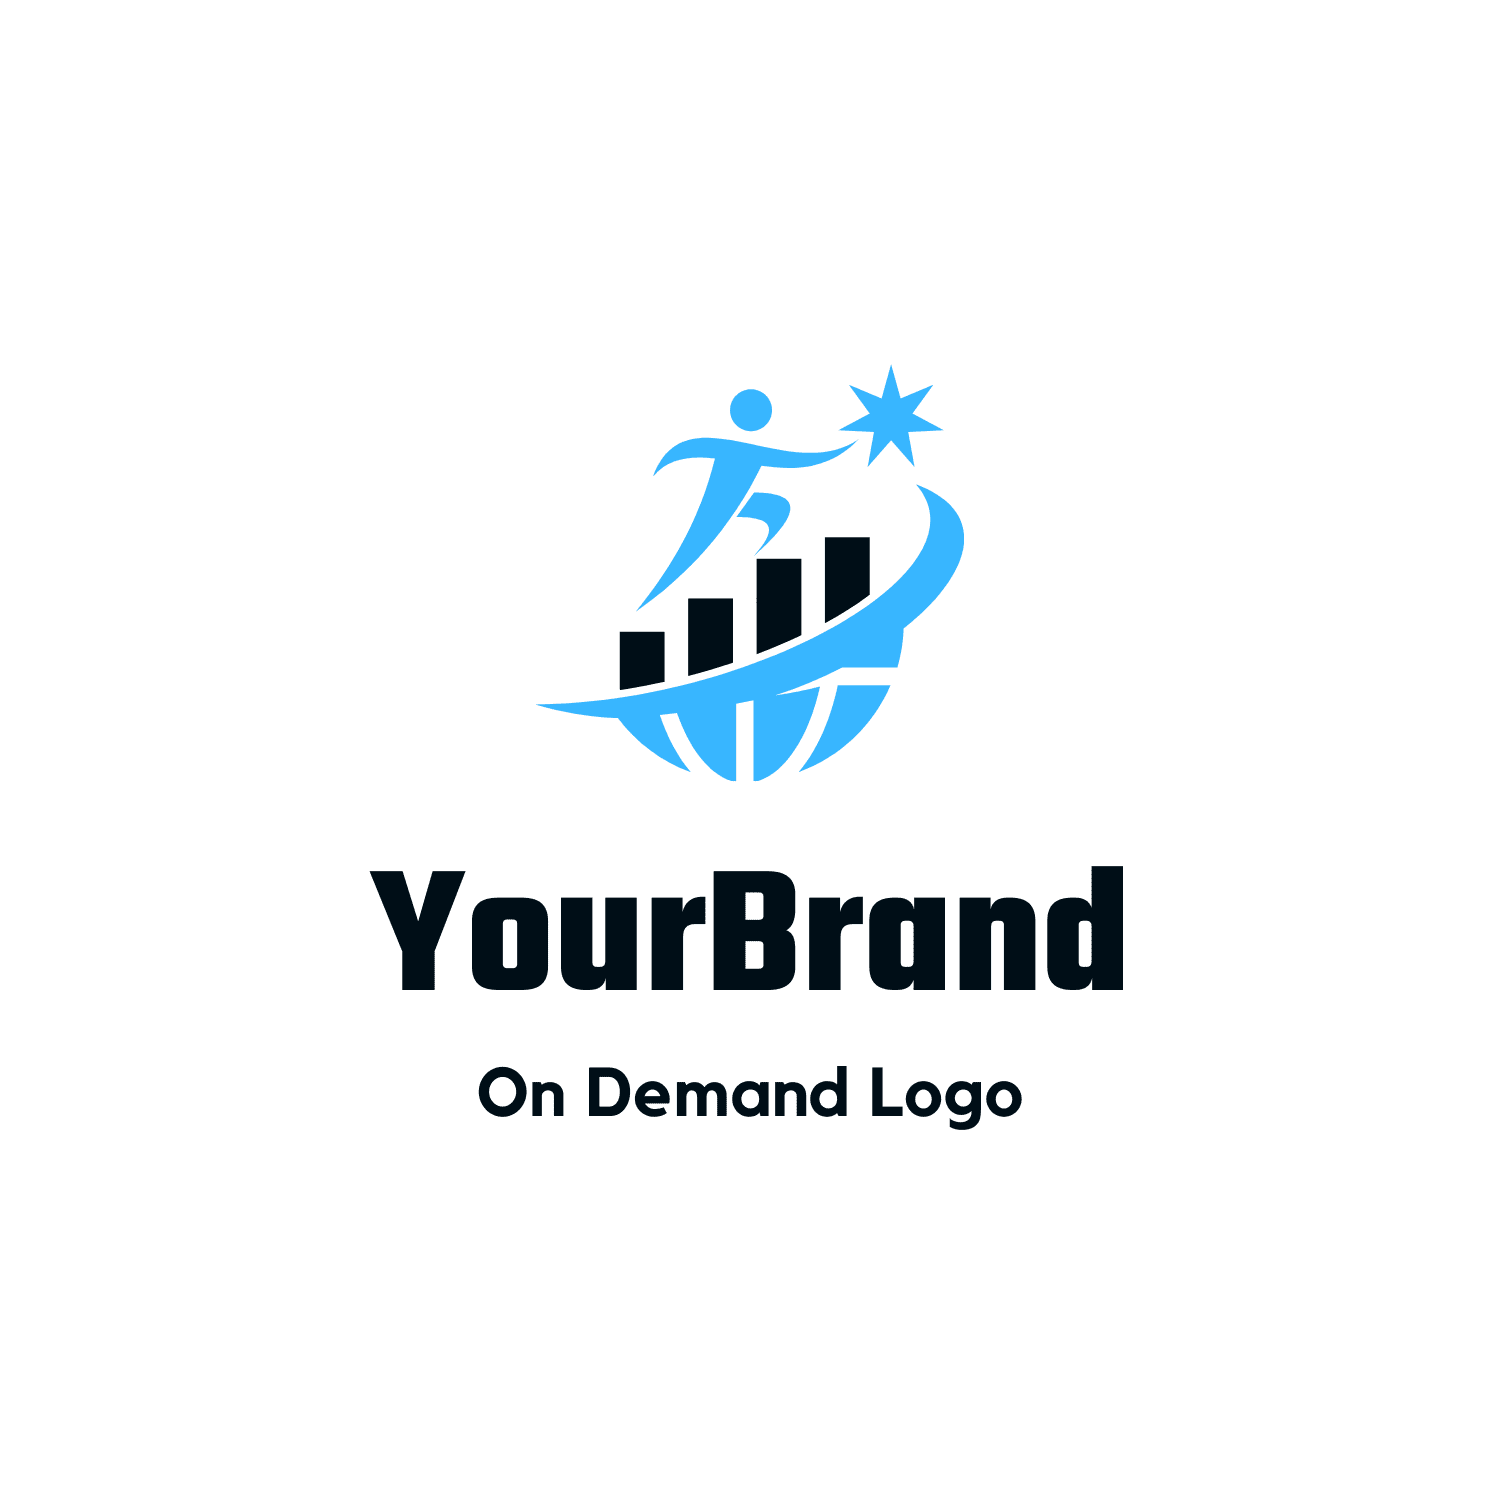 Logo Design Help Brand On Demand